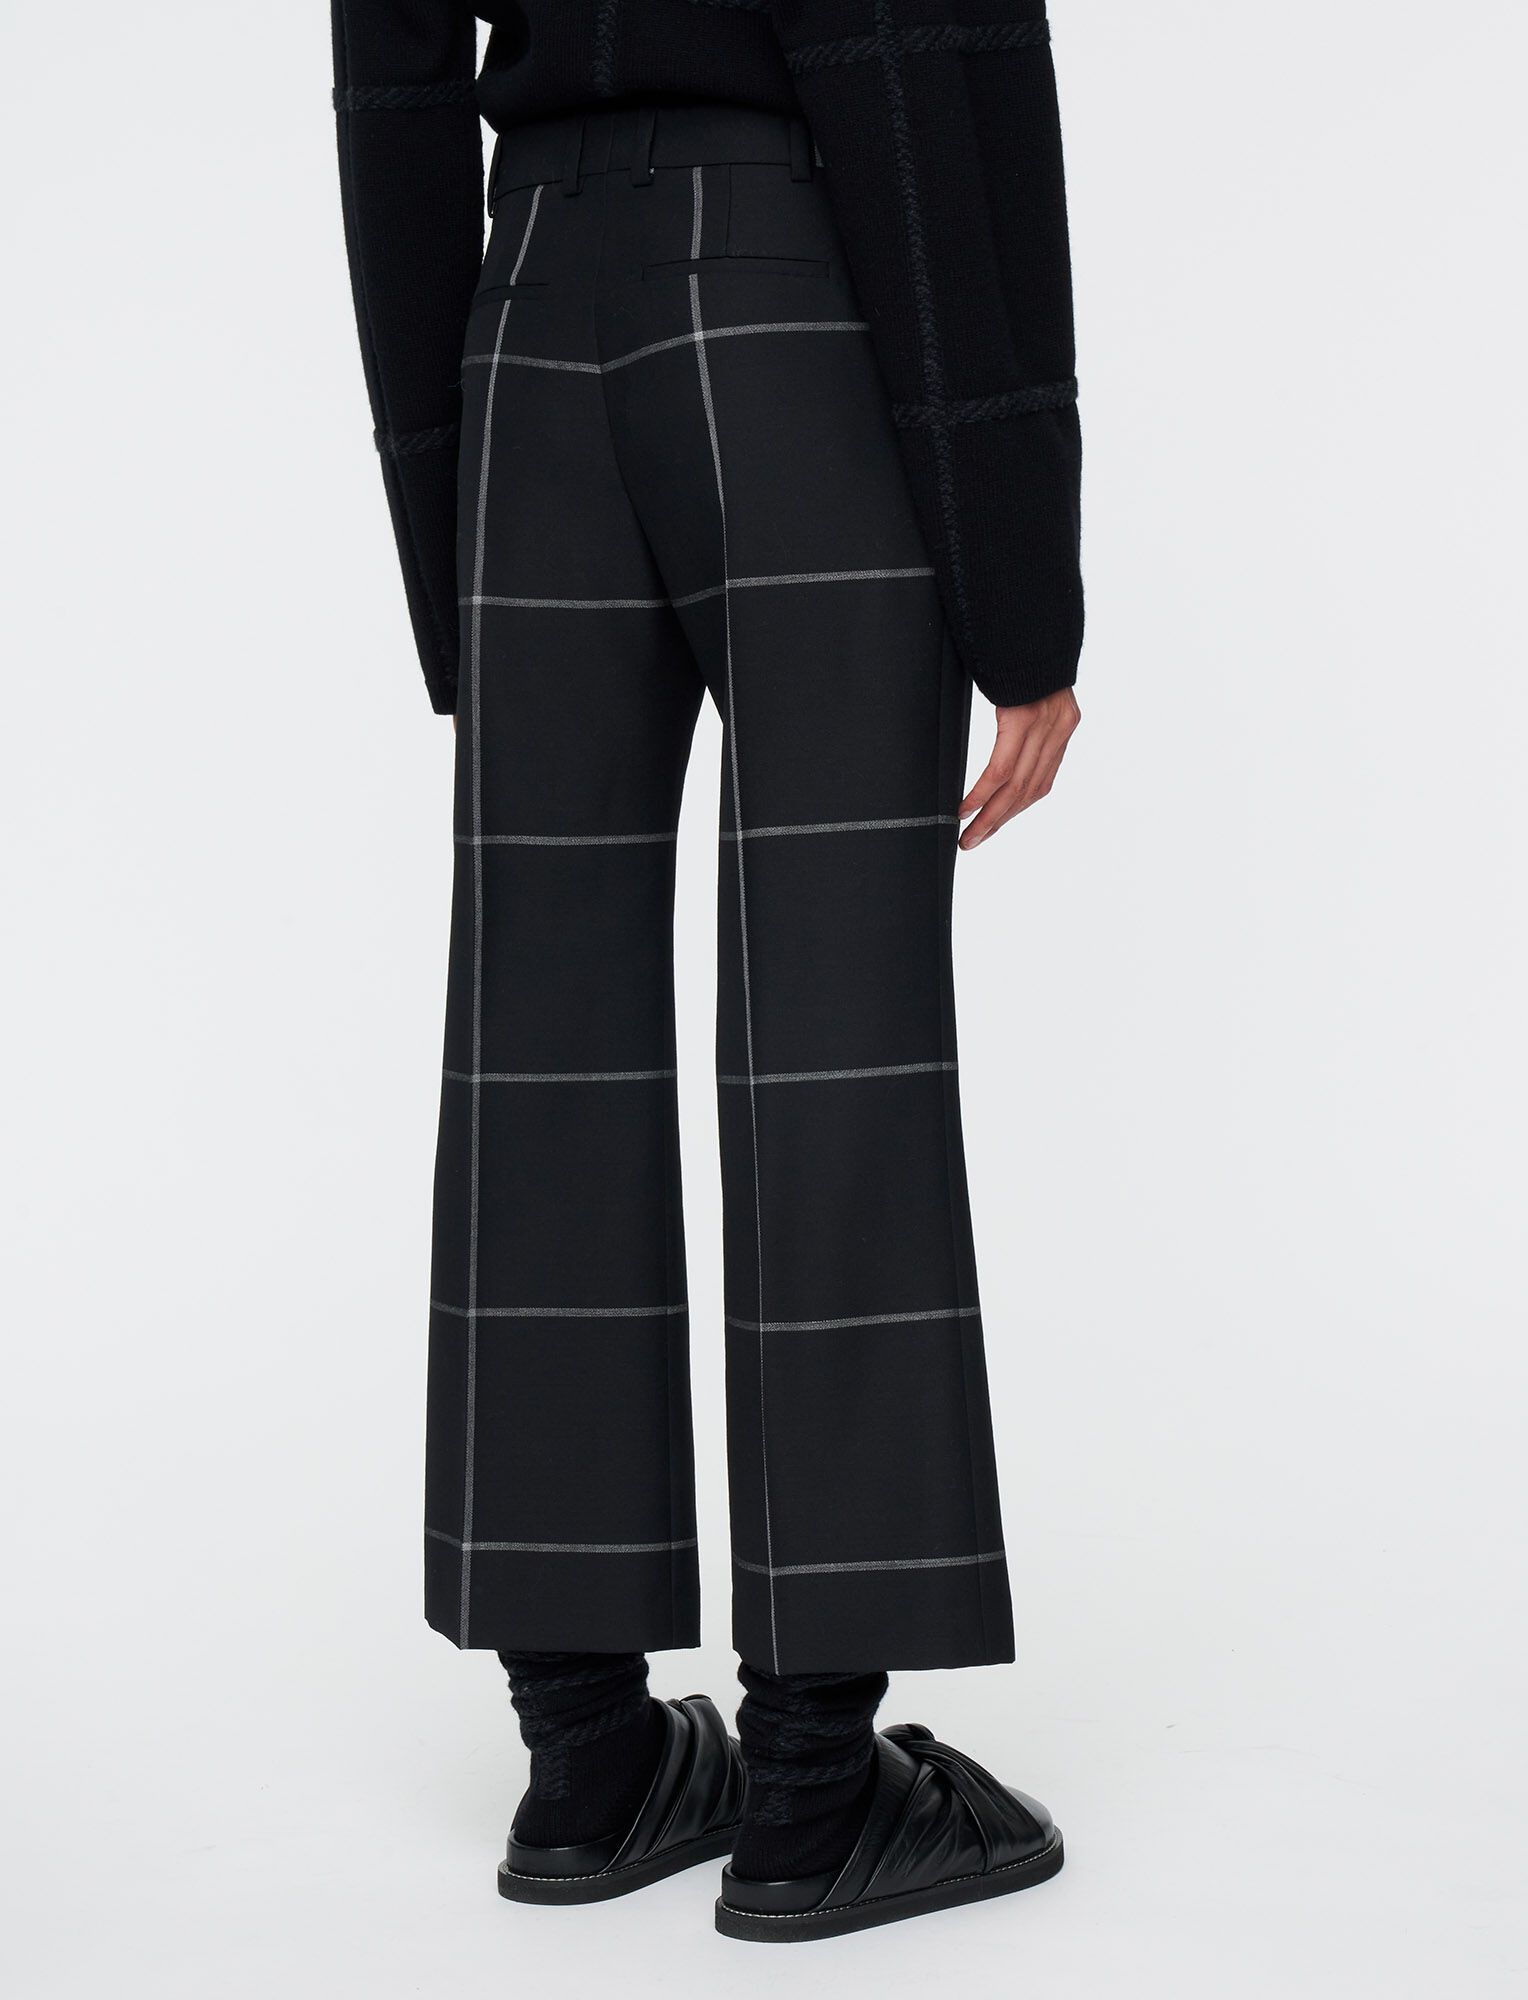 Joseph, Window Pane Wool Talia Trousers, in Black/Mid Grey